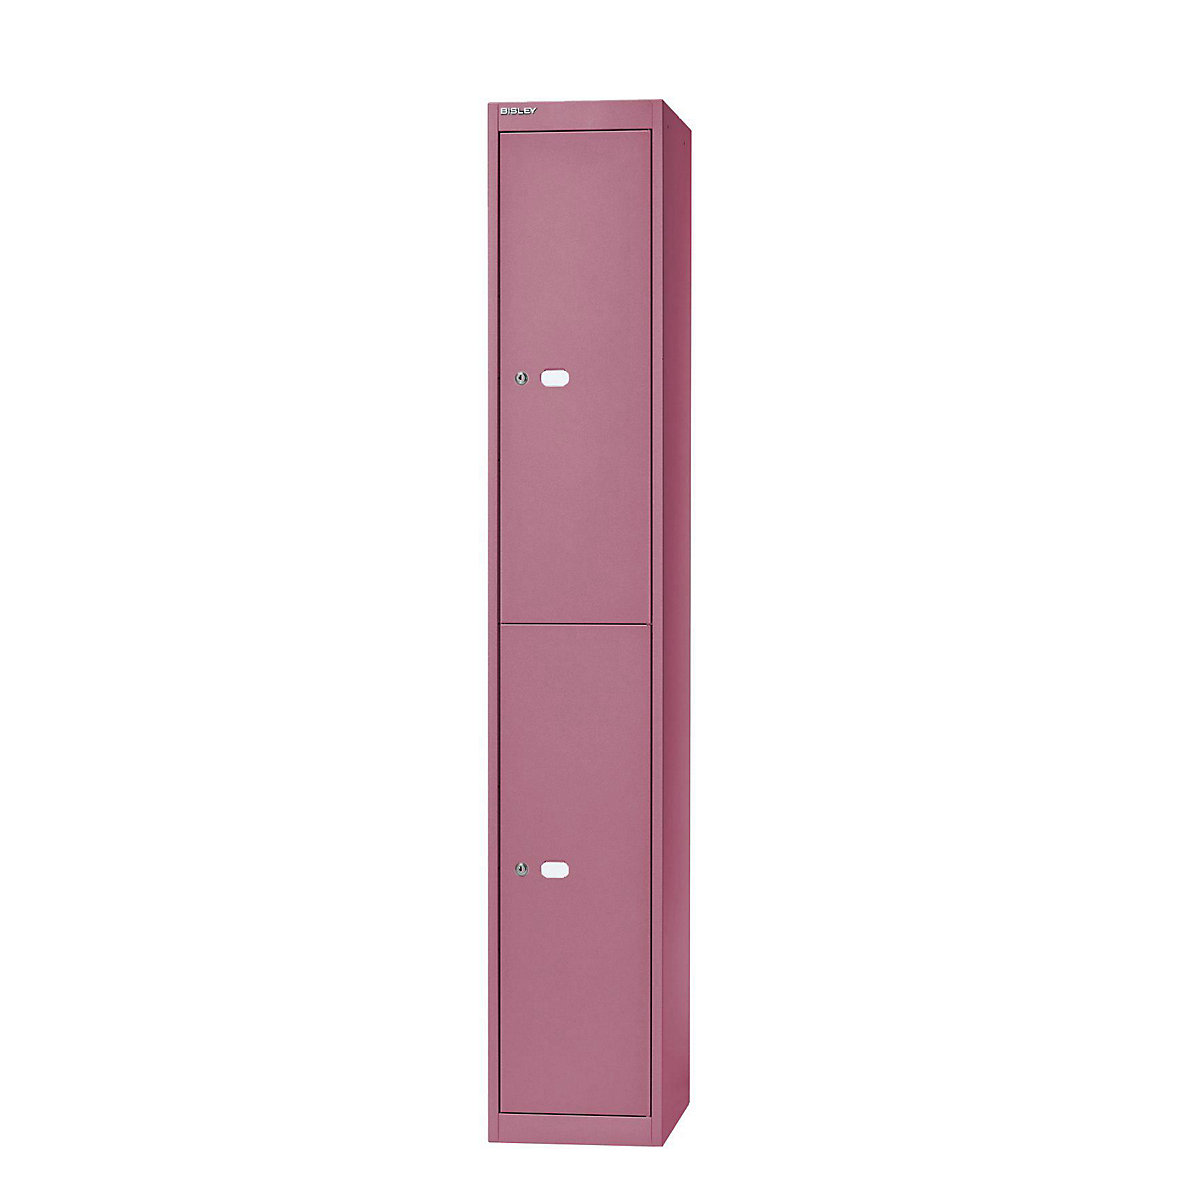 BISLEY OFFICE Garderobensystem, Tiefe 305 mm, 2 Fächer mit je 1 Kleiderhaken, pink